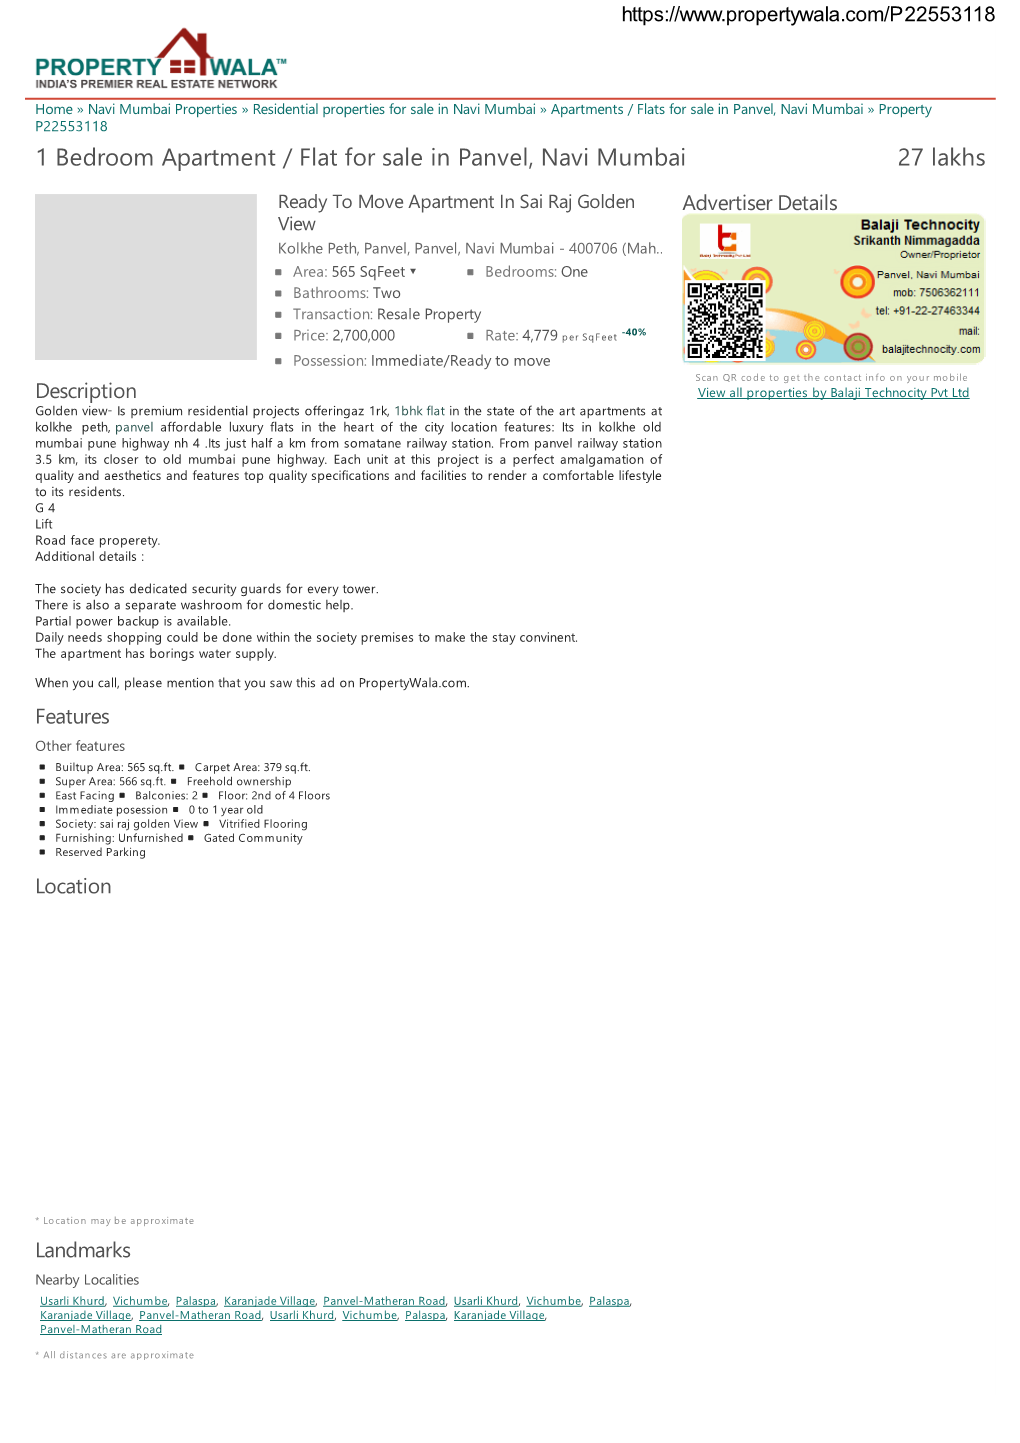 1 Bedroom Apartment / Flat for Sale in Panvel, Navi Mumbai (P22553118